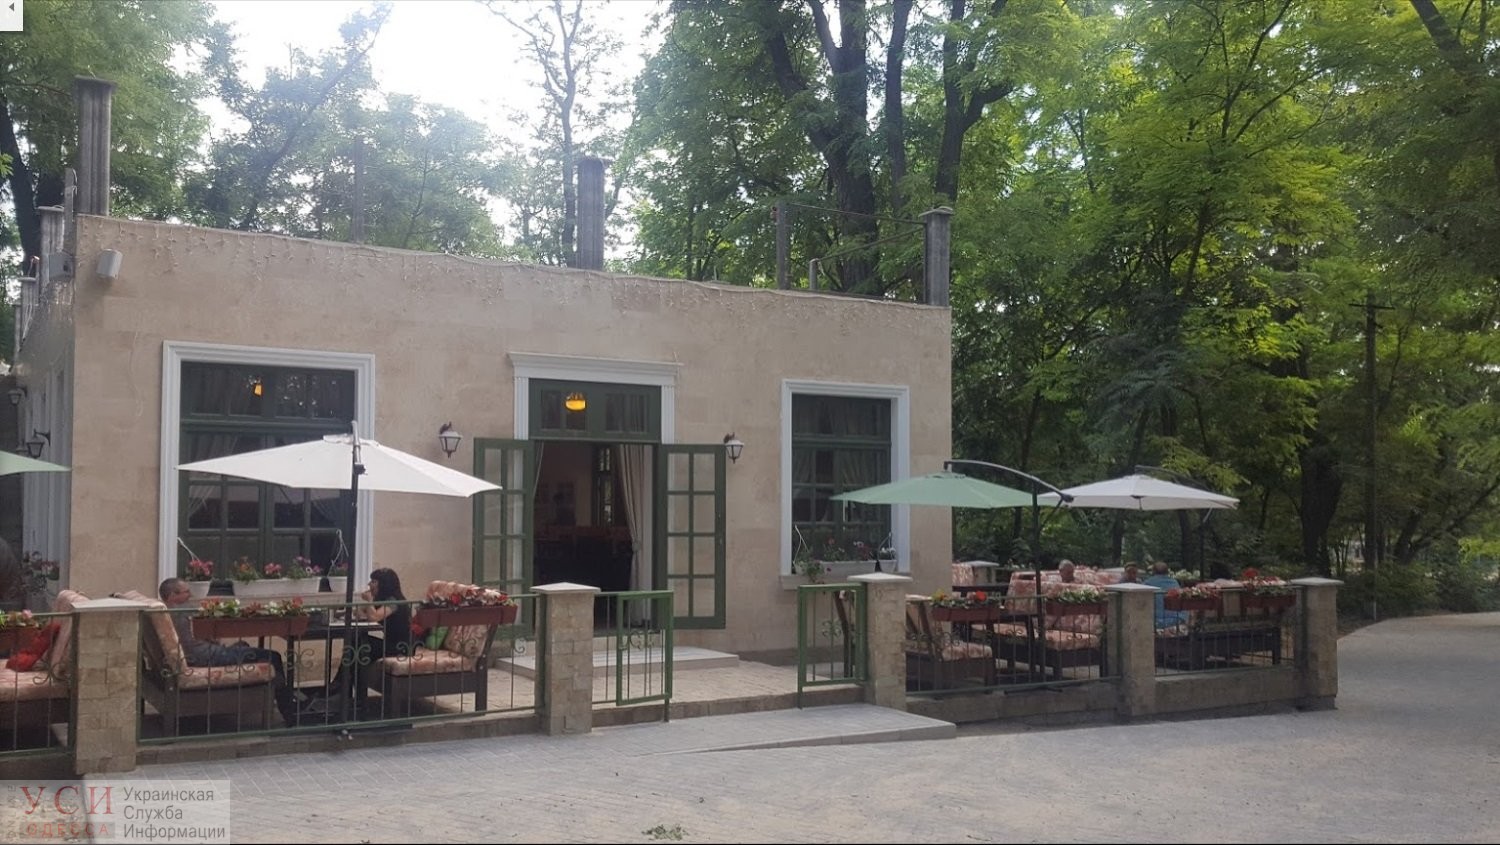 Перестройку туалета в ресторан в парке Шевченко признали незаконной: ресторатор захватил кусок парка «фото»